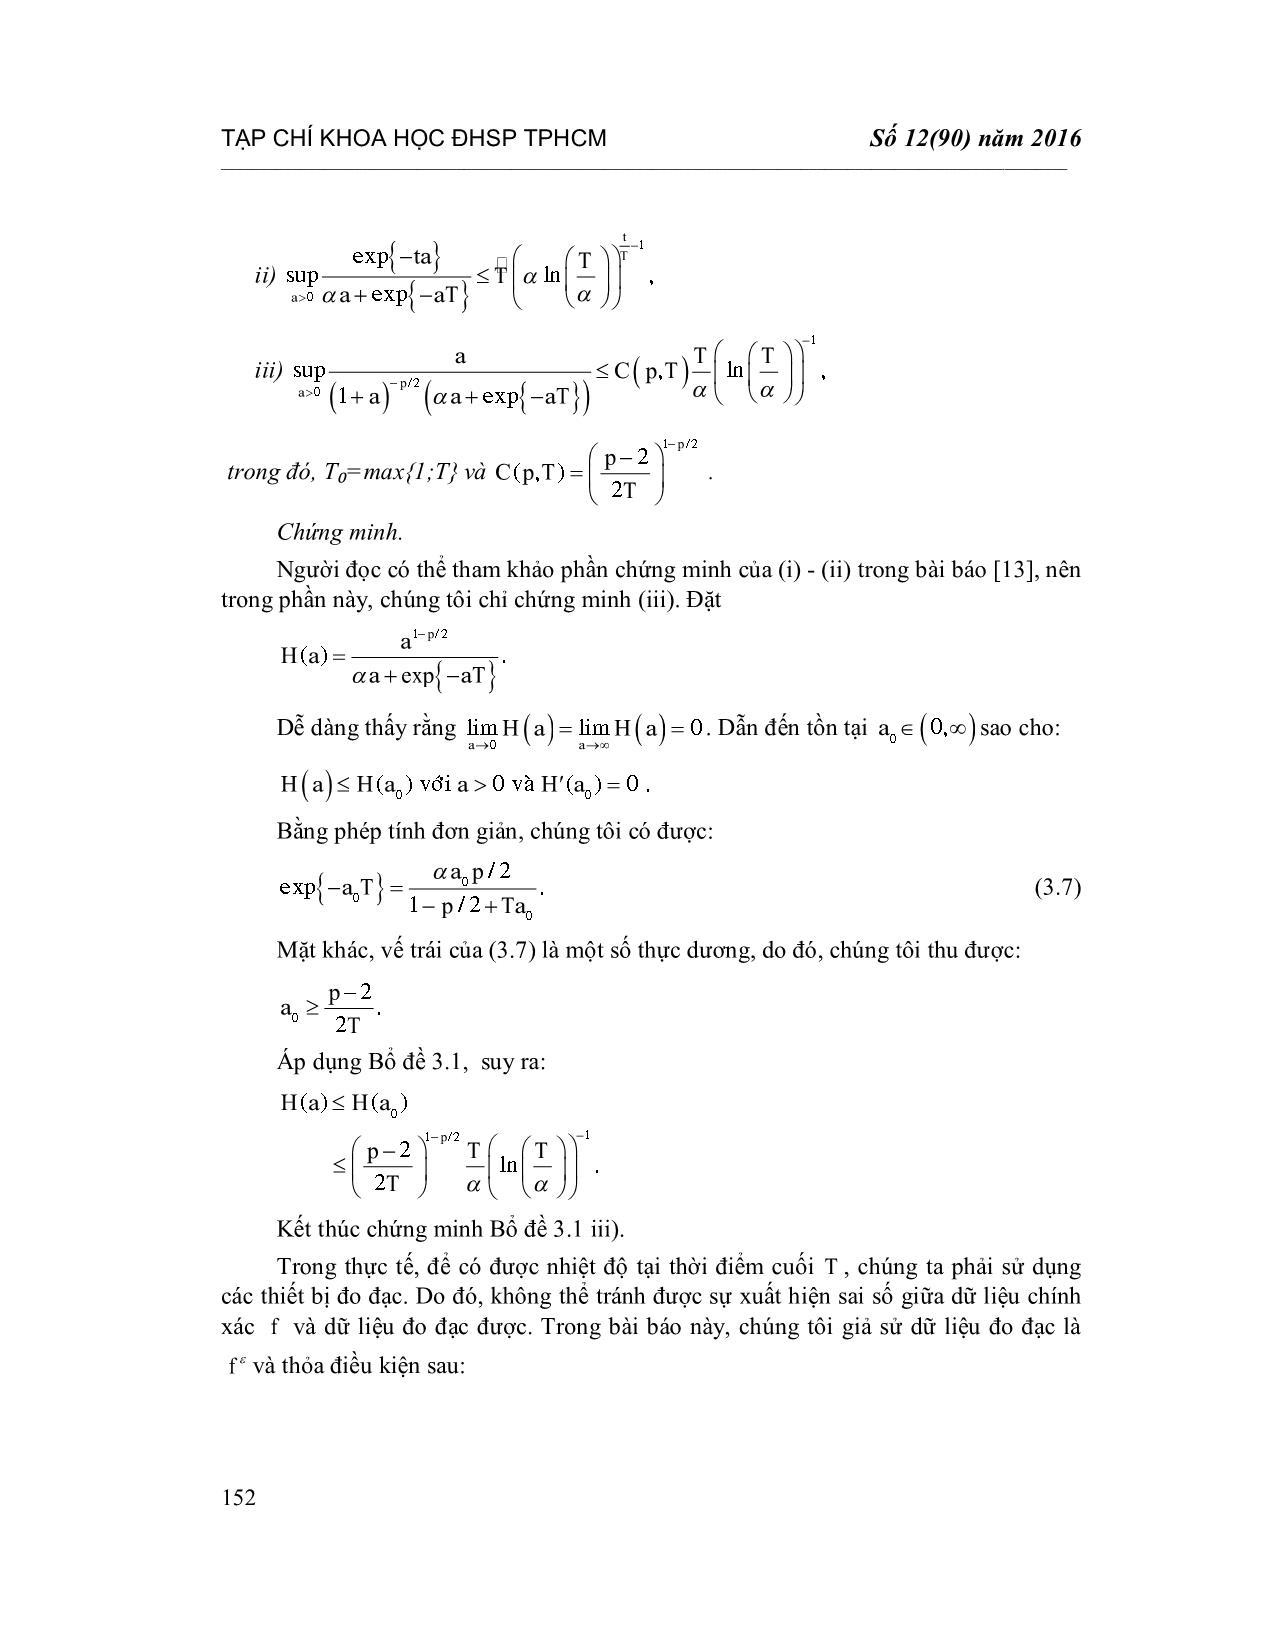 Chỉnh hóa bài toán nhiệt ngược với hệ số phụ thuộc thời gian trong tọa độ cầu trang 8